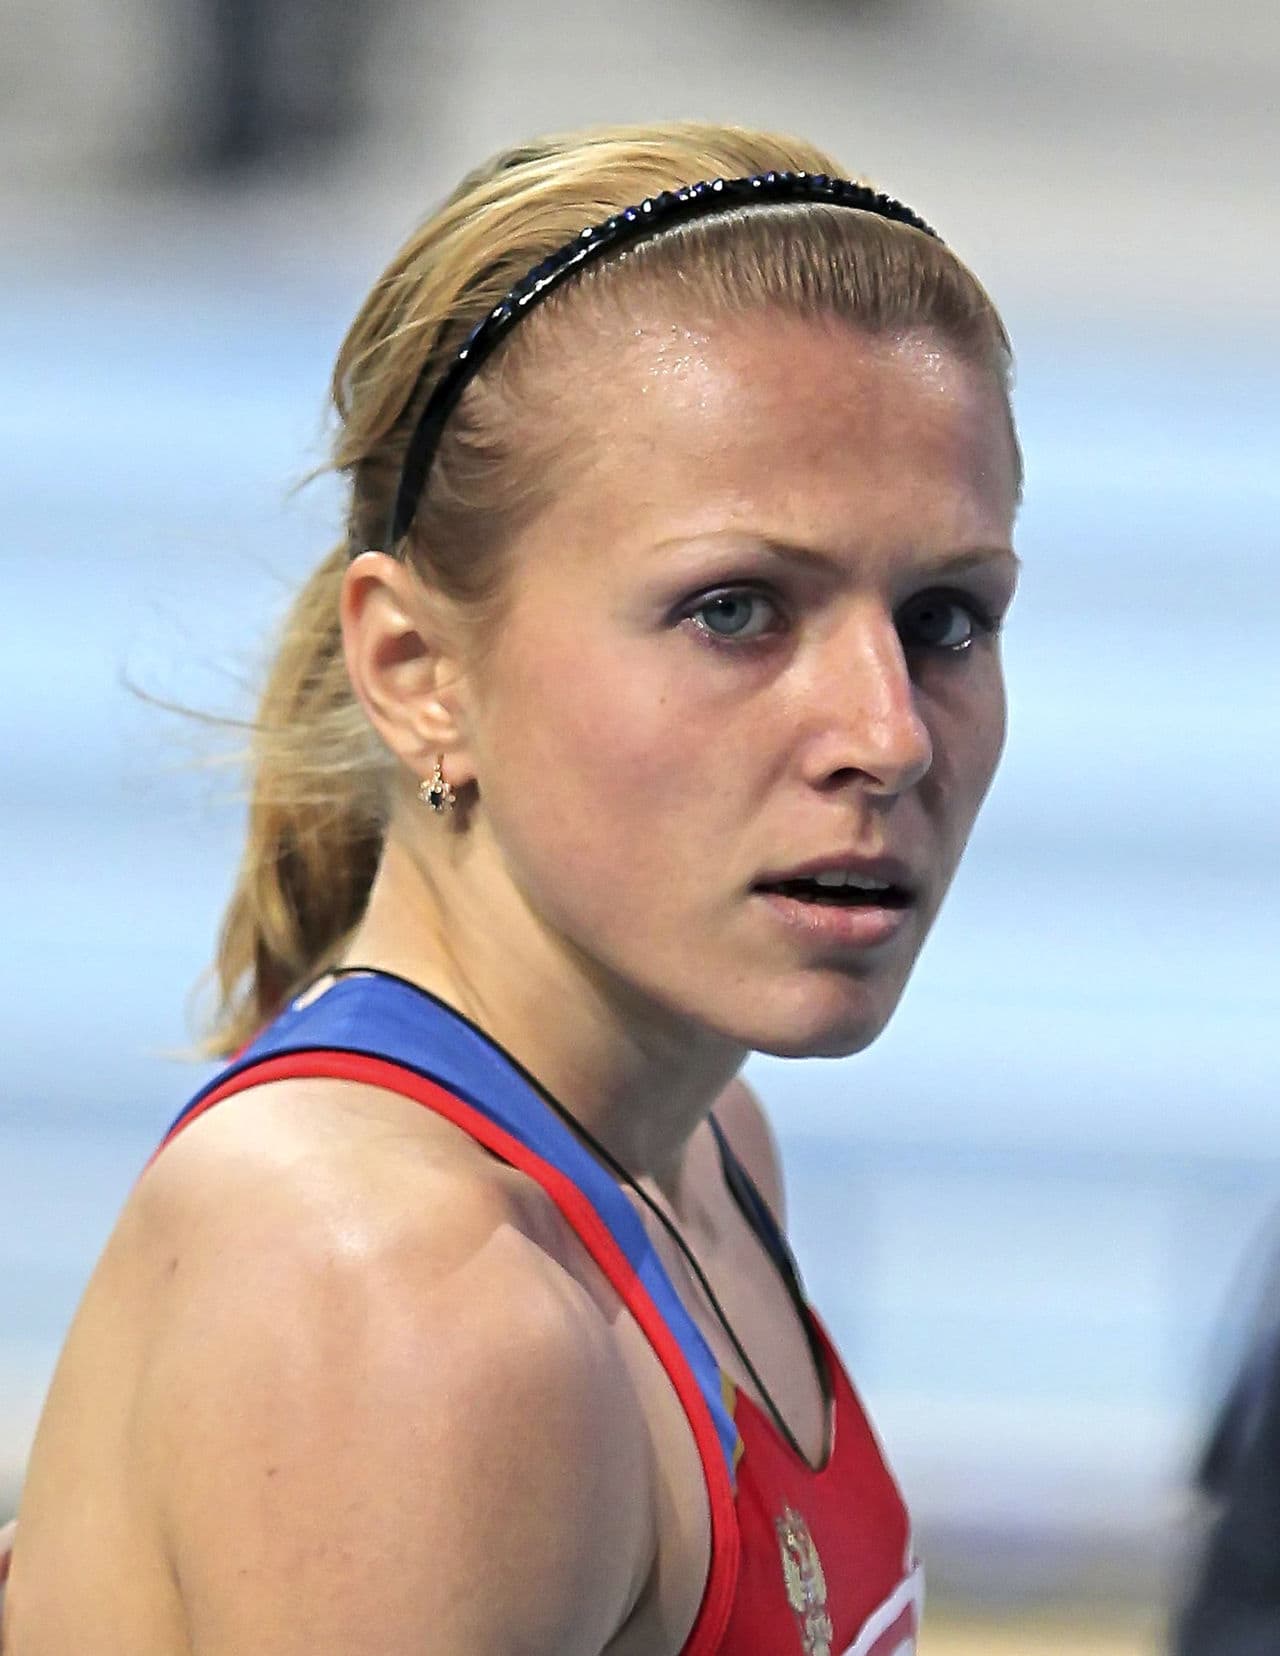 Yuliya Stepanova, pictured on March 4, 2011. (Aleksander Chernykh)